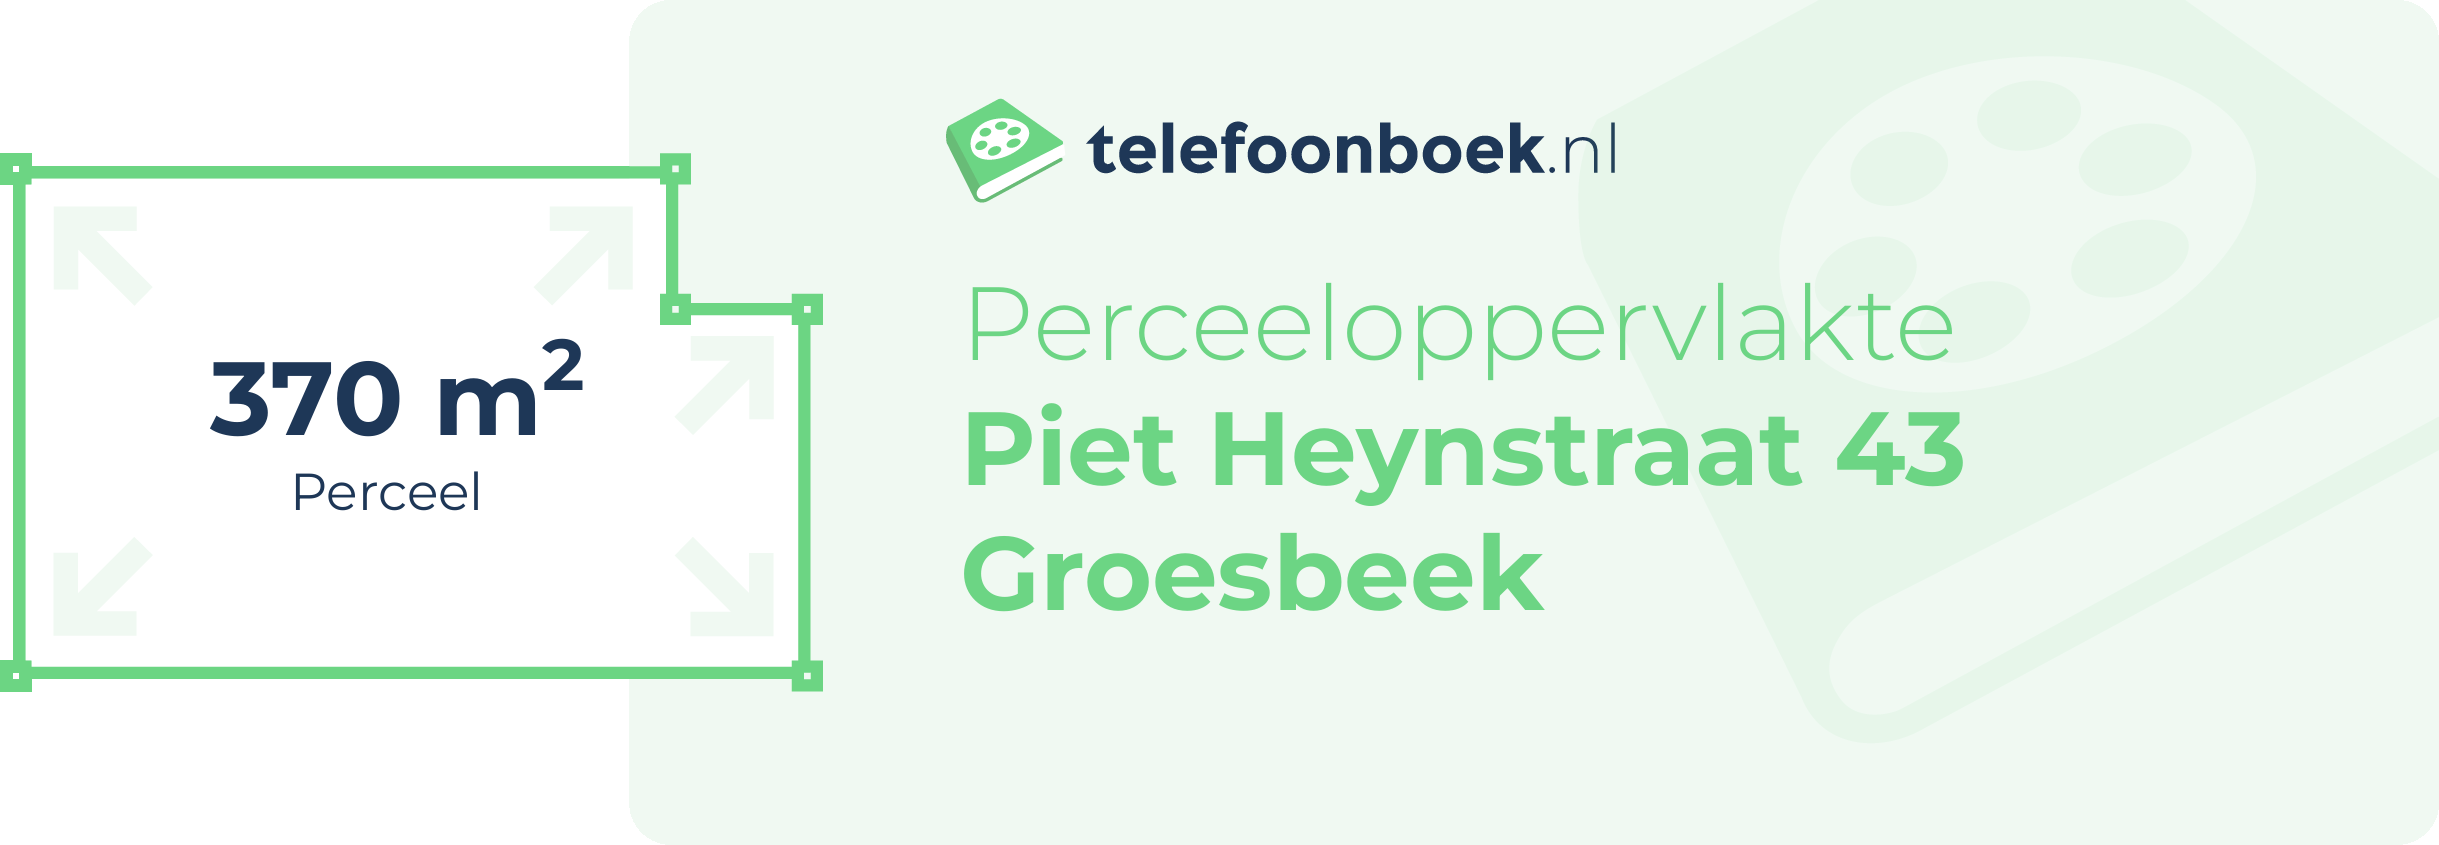 Perceeloppervlakte Piet Heynstraat 43 Groesbeek